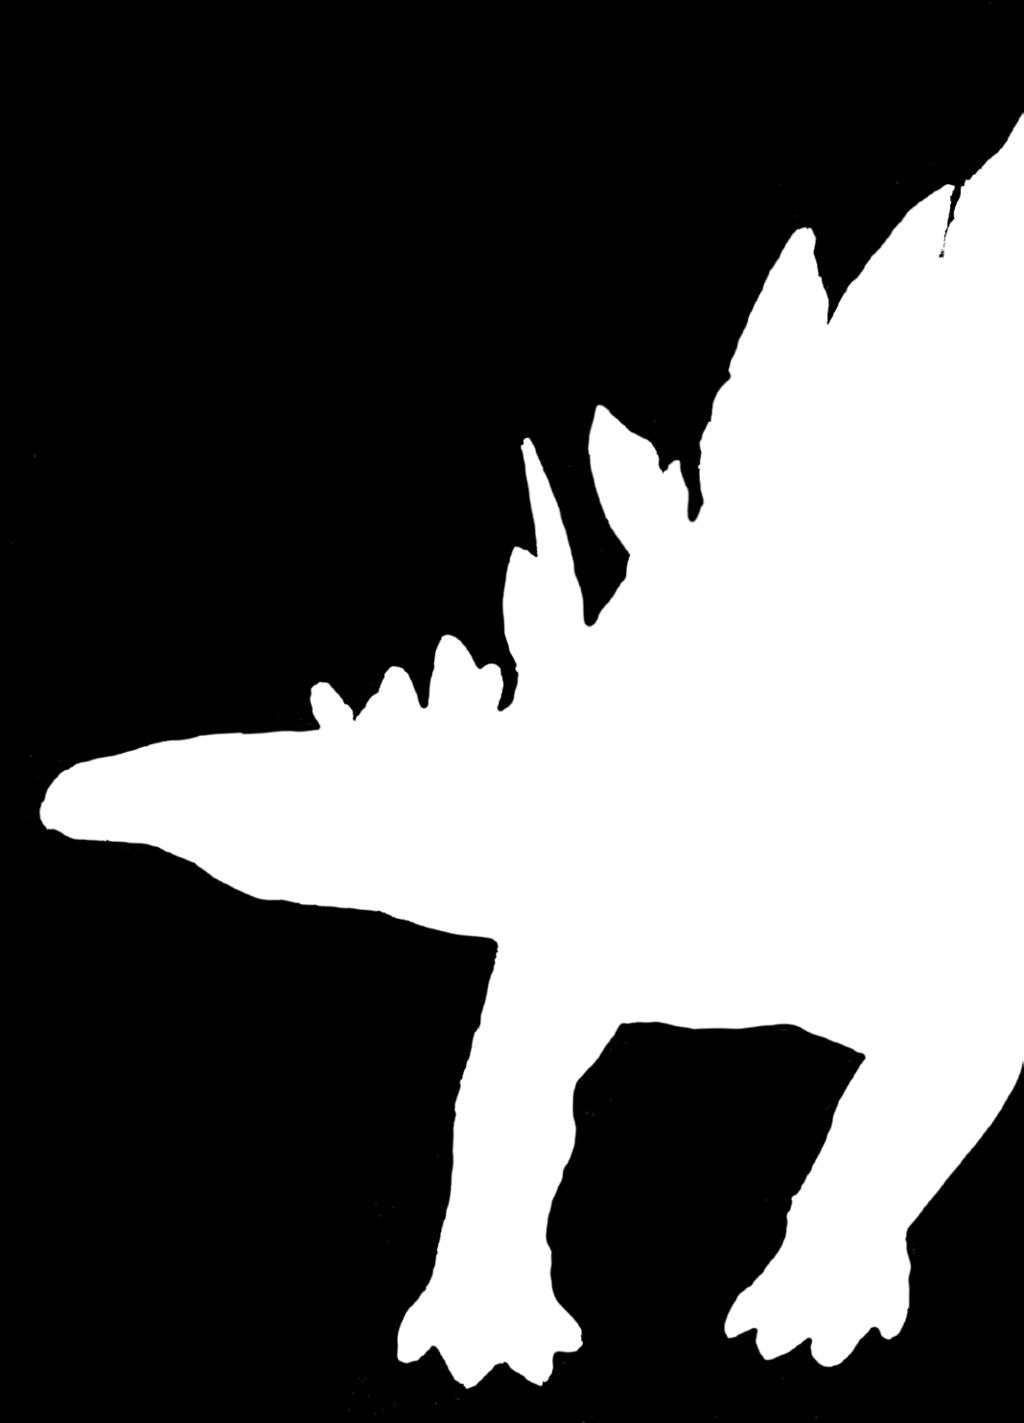 Kentrosauři mají desky více úzké a špičaté. Největší samci mohou být dlouzí téměř šest metrů a váží asi 1,5 tuny, obvykle jsou ale menší. Běžně dosahují velikosti průměrného osobního automobilu.